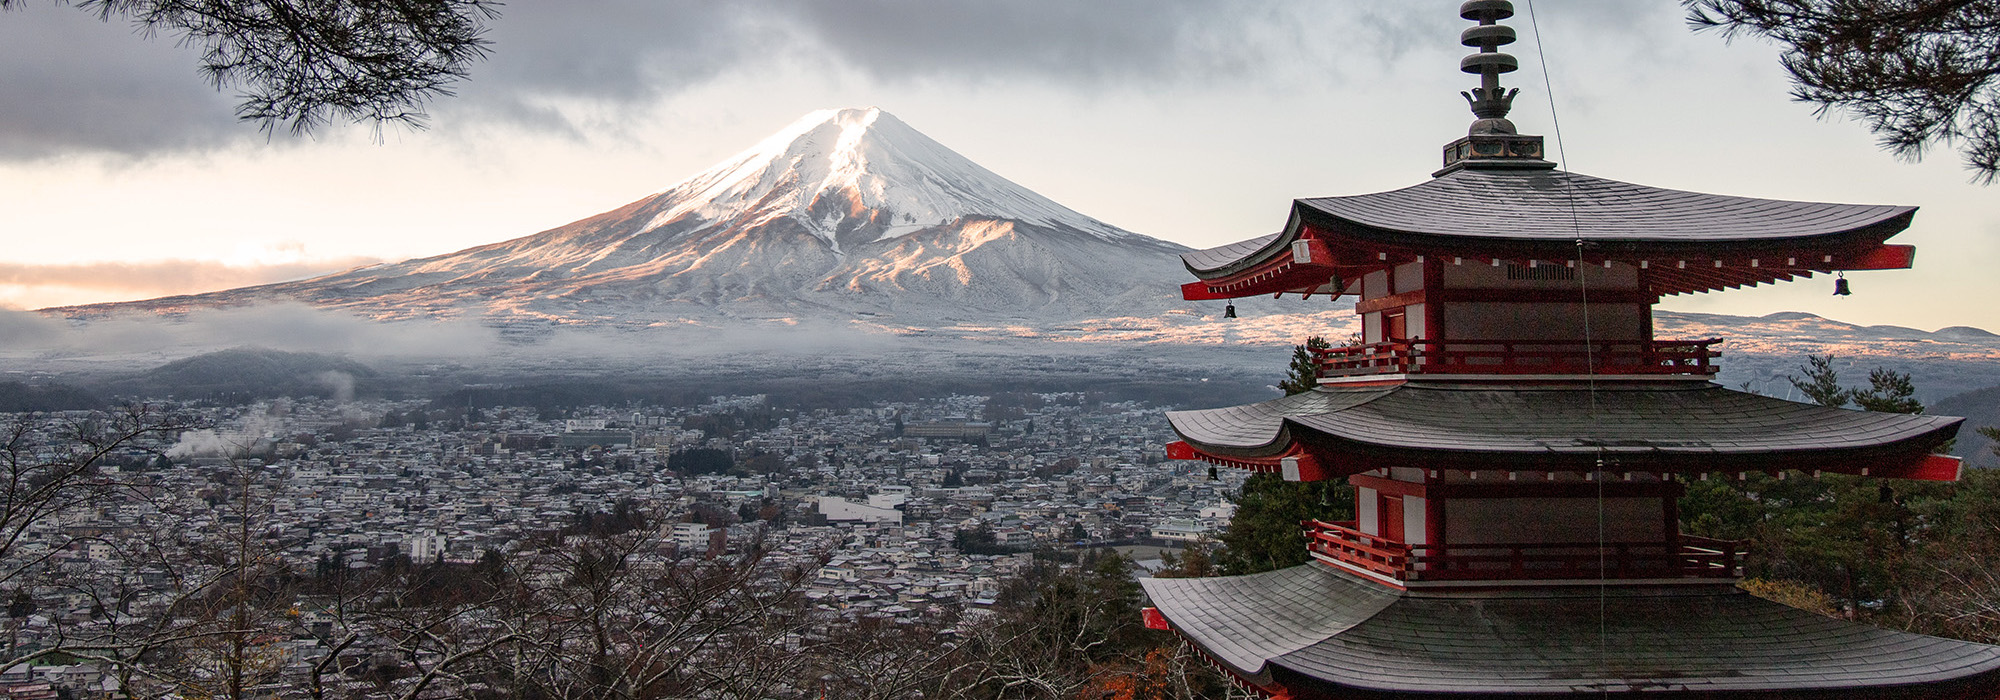 best solo travel destinations: Japan